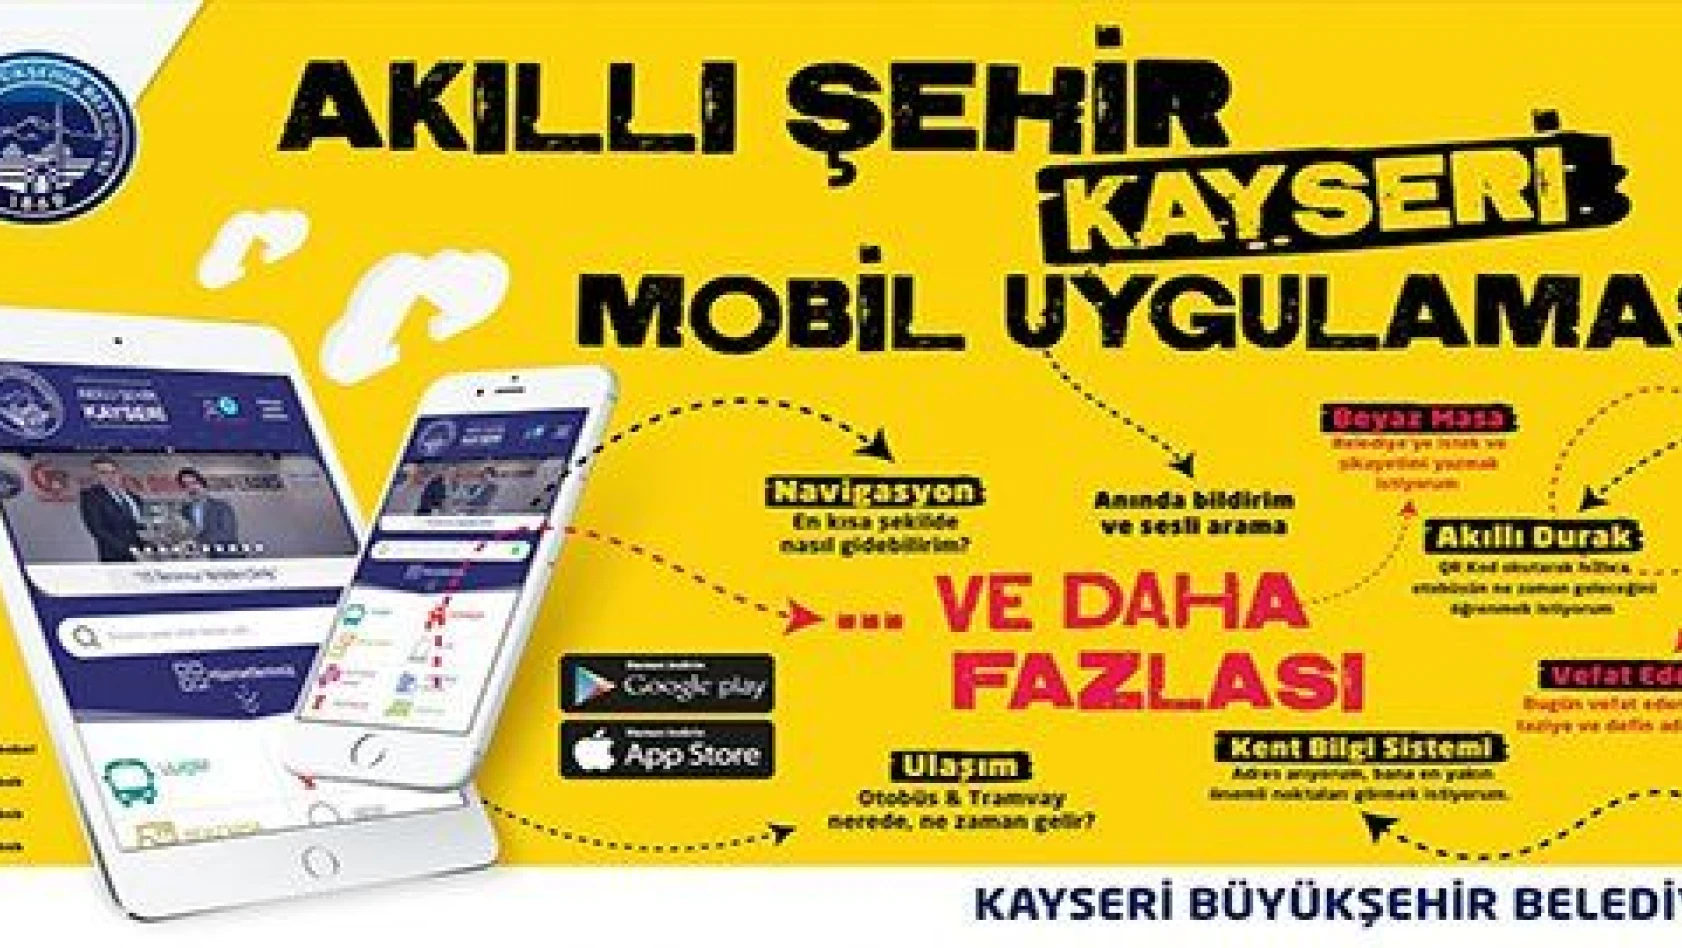  'Akıllı Şehir Kayseri' mobil uygulaması kullanılmaya başlandı